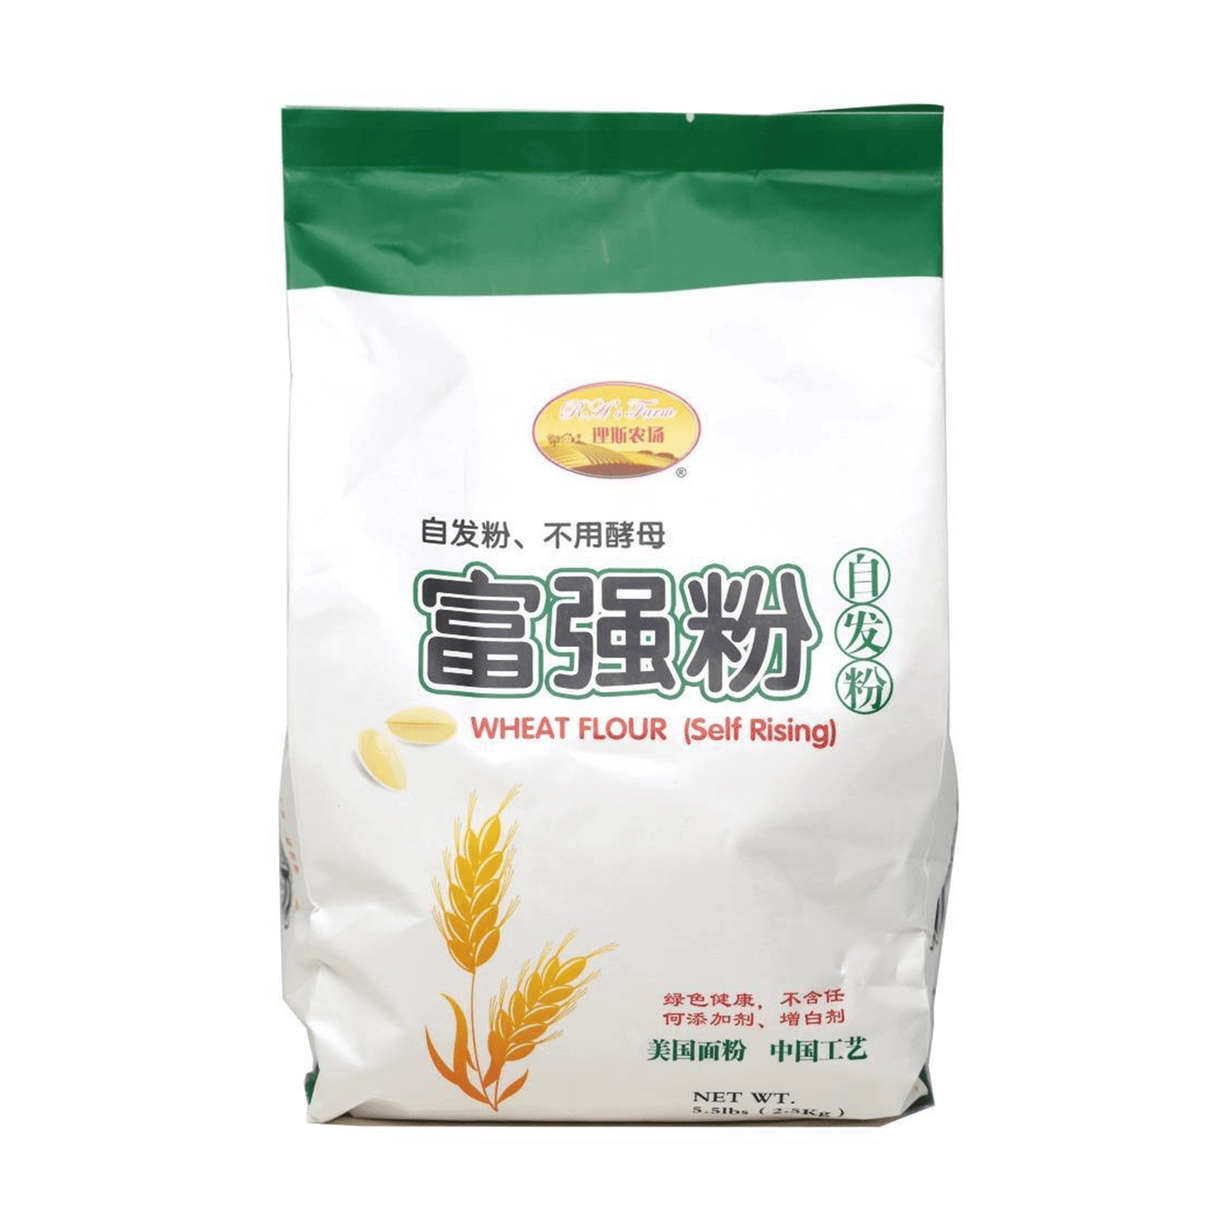 RA's Farm Wheat Flour (Self Rising)